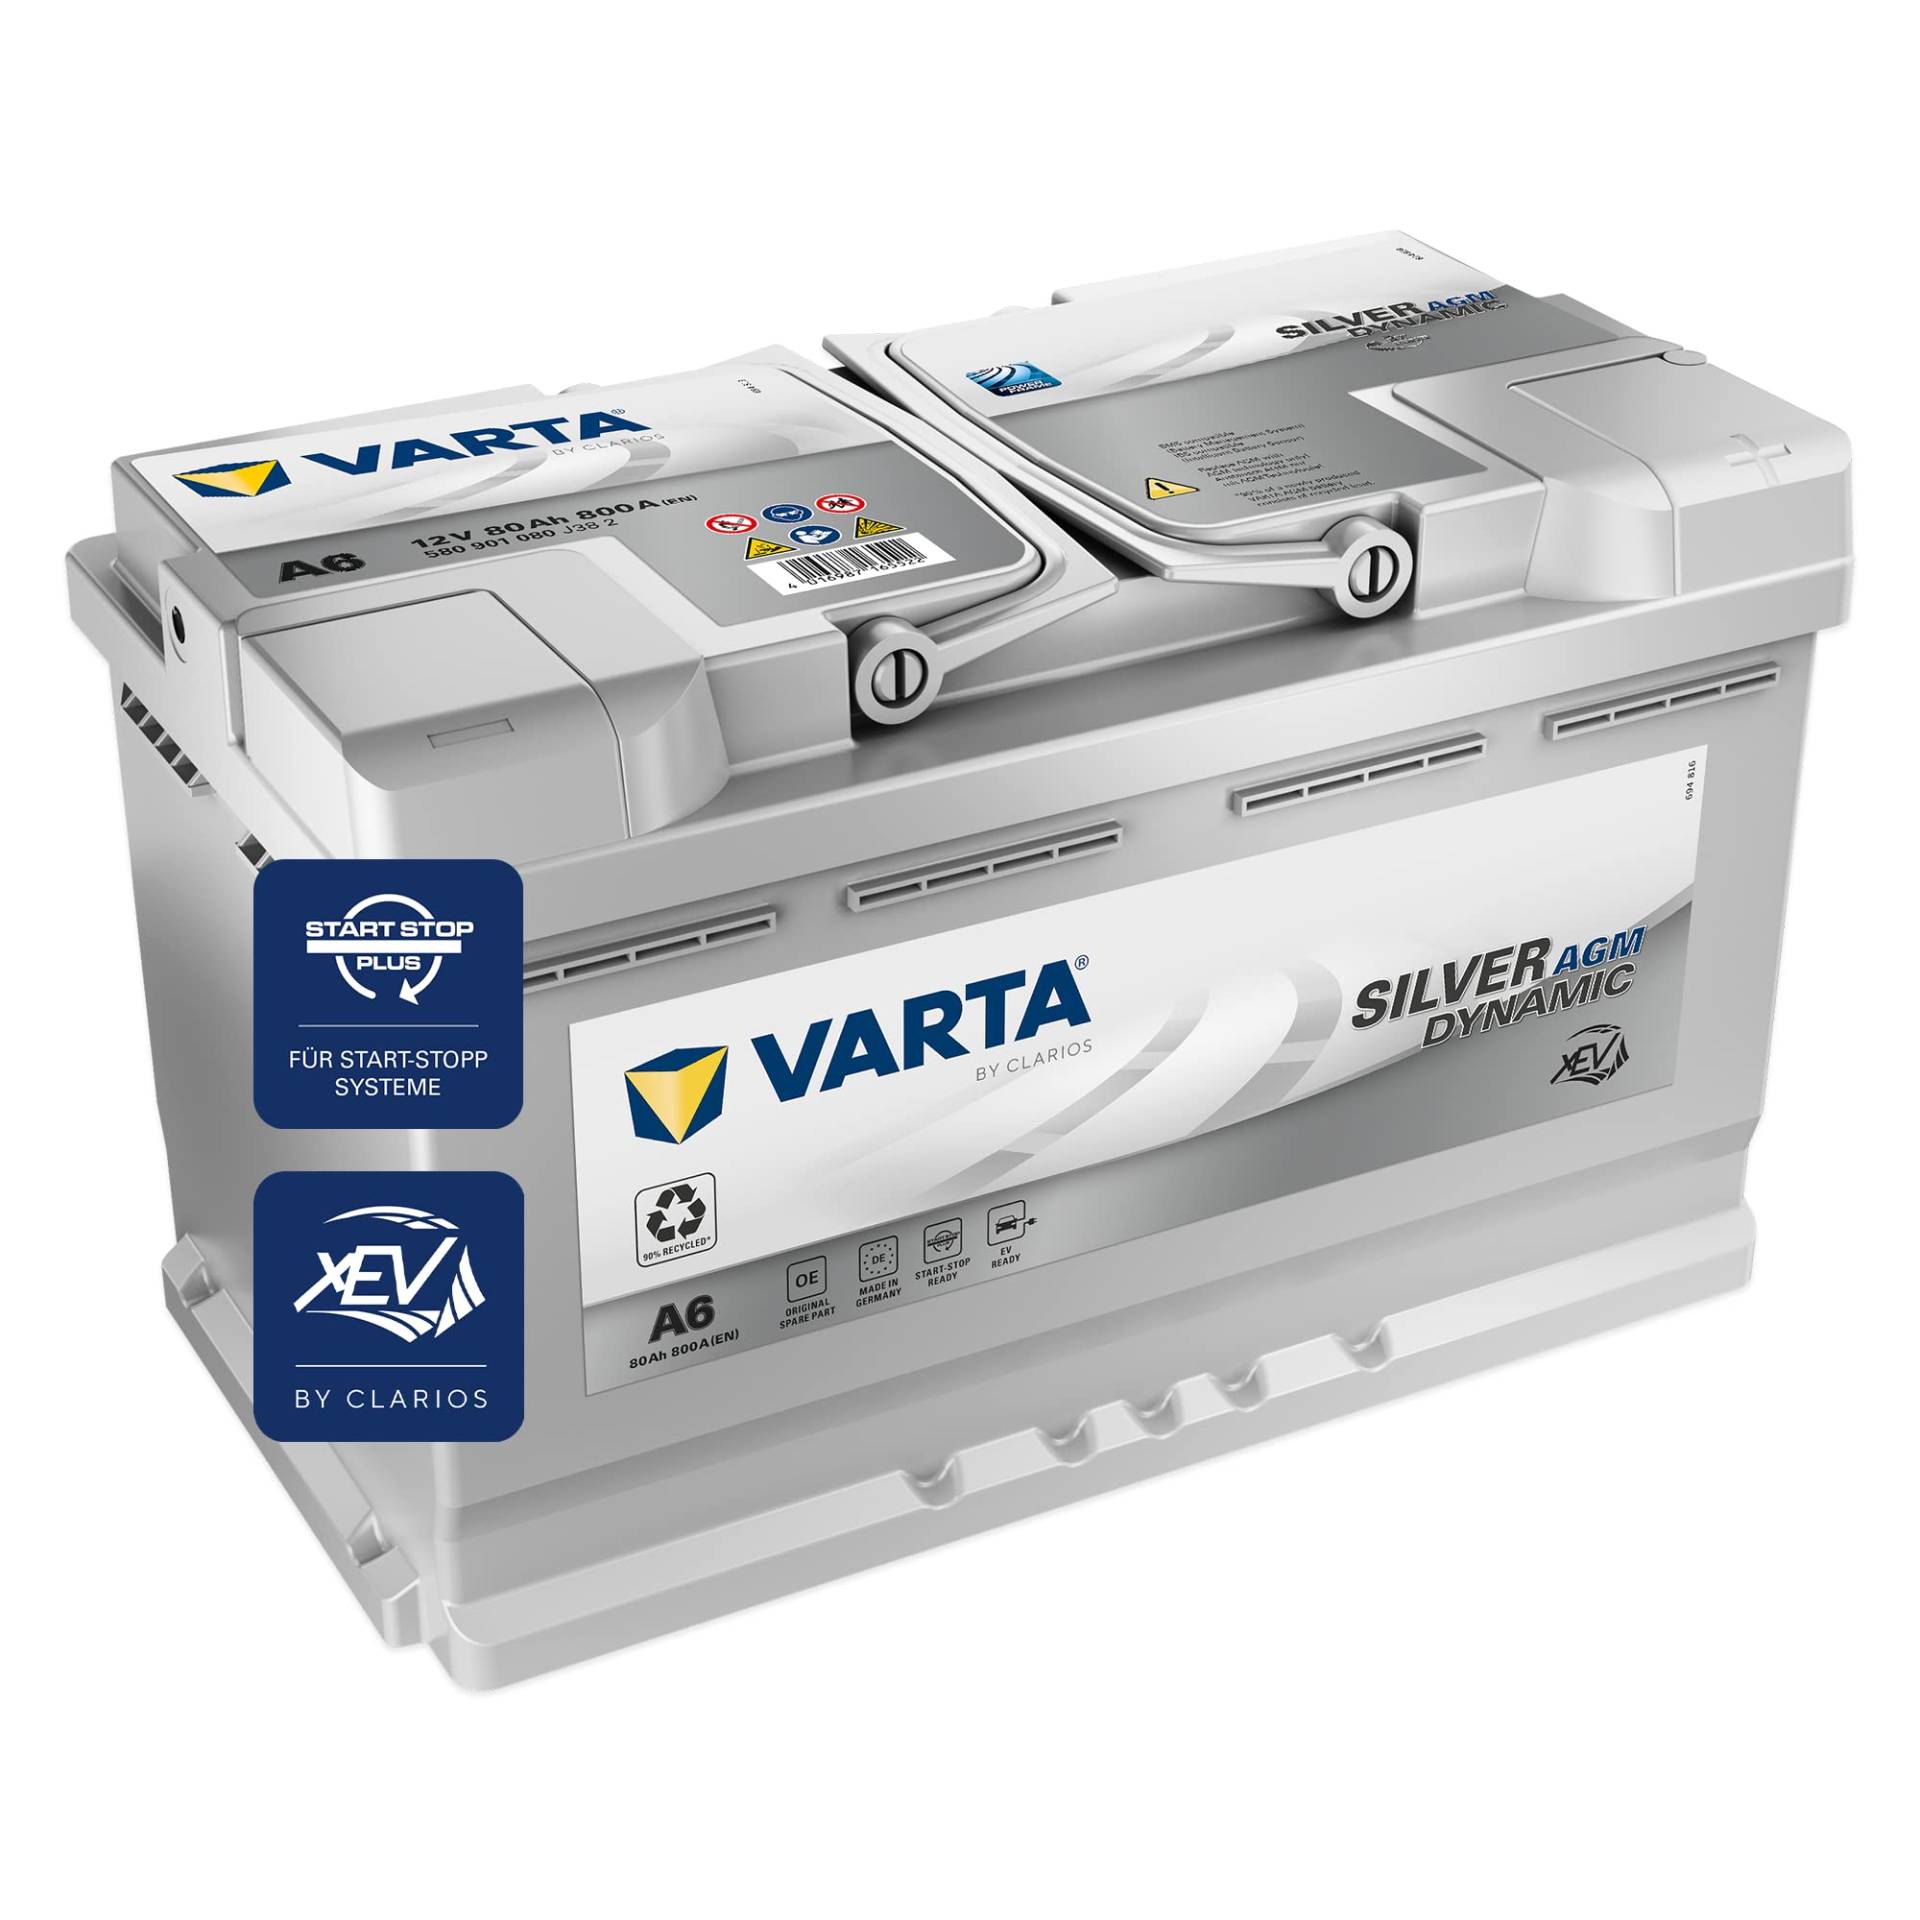 VARTA Silver Dynamic AGM Batterie A6 – Start-Stop und xEV Autobatterie 12V 80Ah 800A – Starterbatterie für Autos mit hohem Energiebedarf von Varta